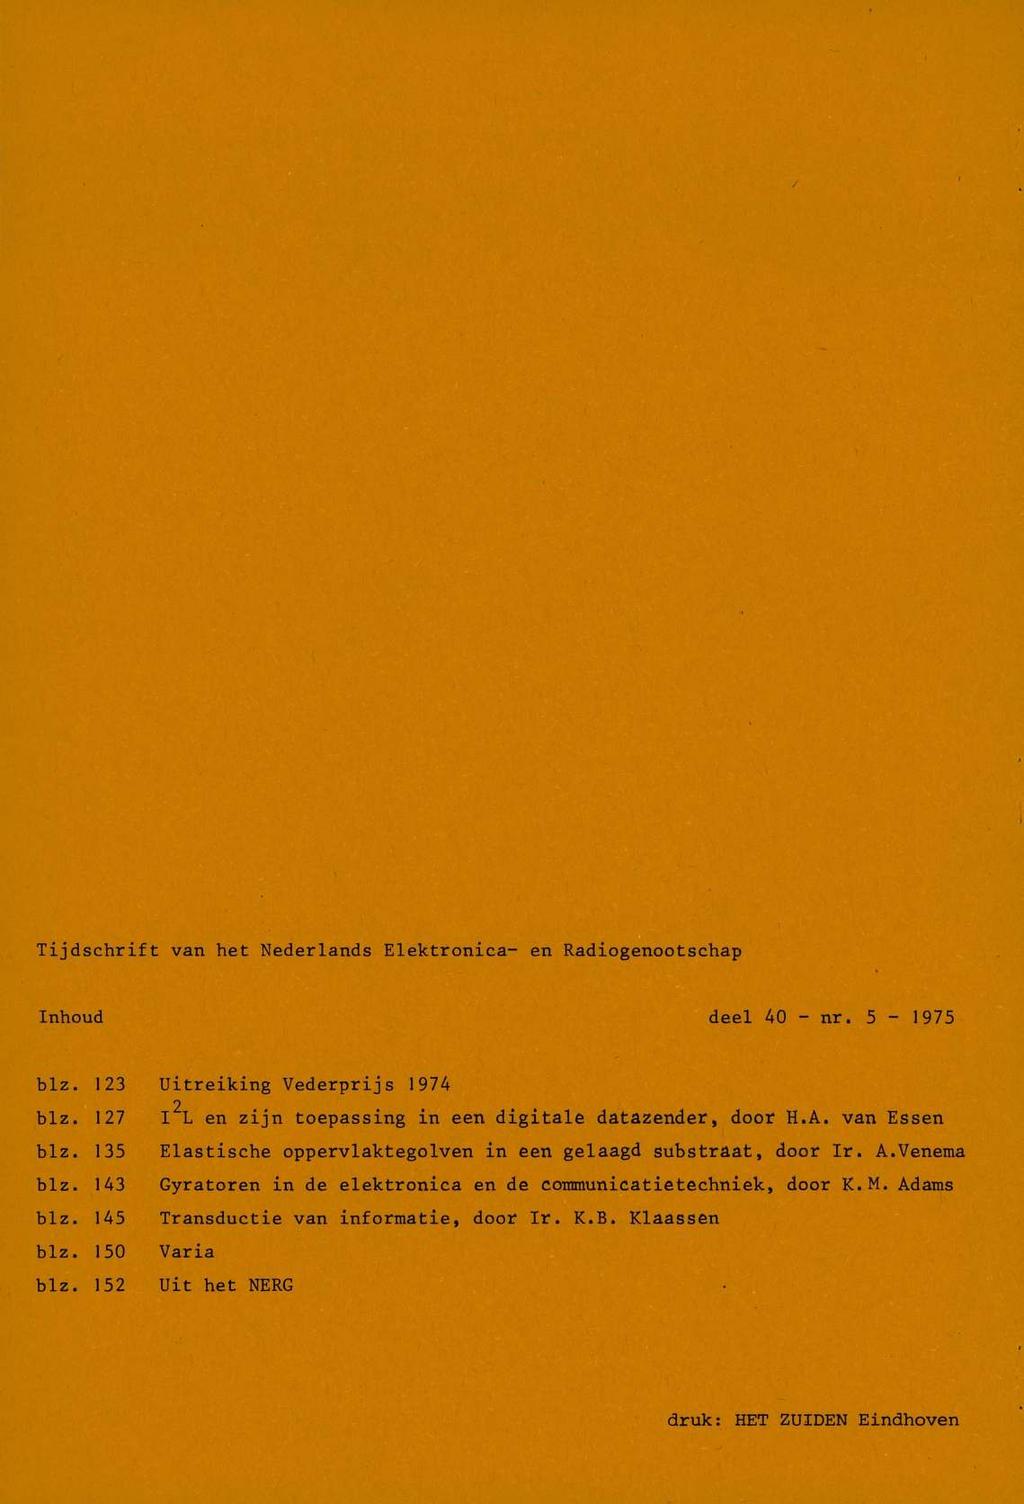 / I ' Tijdschrift van het Nederlands Elektronica- en Radiogenootschap Inhoud deel 40 - nr. 5-1975 blz. 13 blz. 17 blz. 135 blz. 143 blz. 145 blz. 150 blz.